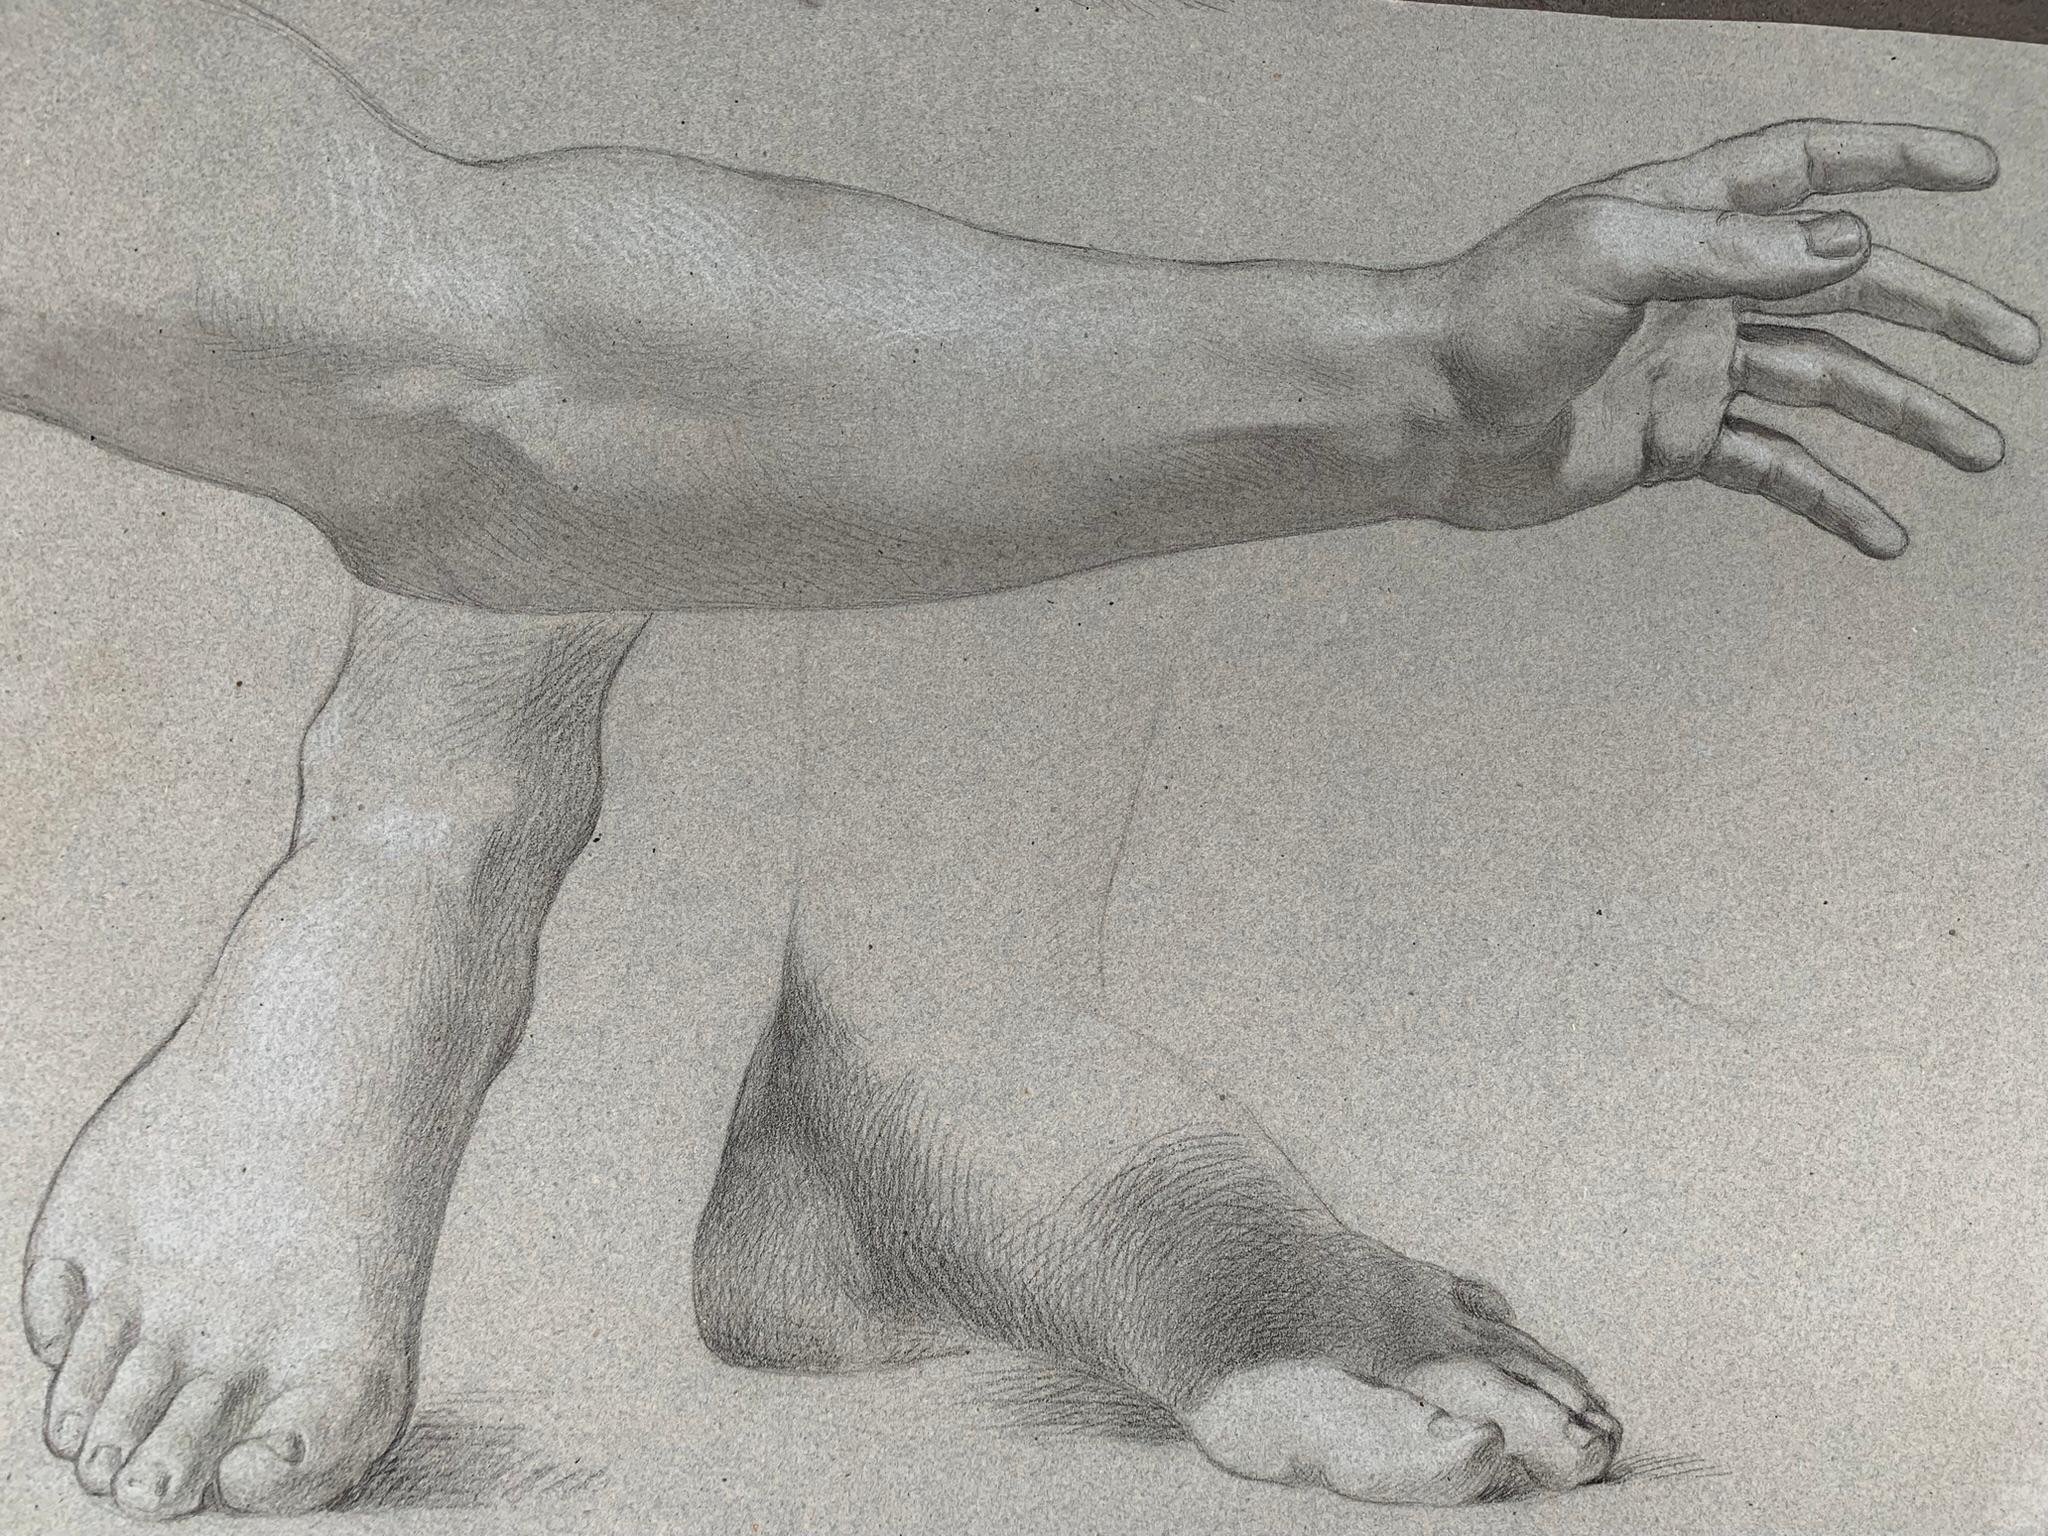 italienische Schulzeichnung aus dem 19. Jahrhundert. Akademische Studie über die Figur des jungen nackten Mannes.
Zeichnung aus zwei Seiten eines Blattes Papier
Auf der anderen Seite sind zwei Füße und ein Arm mit großem Geschick und hervorragender